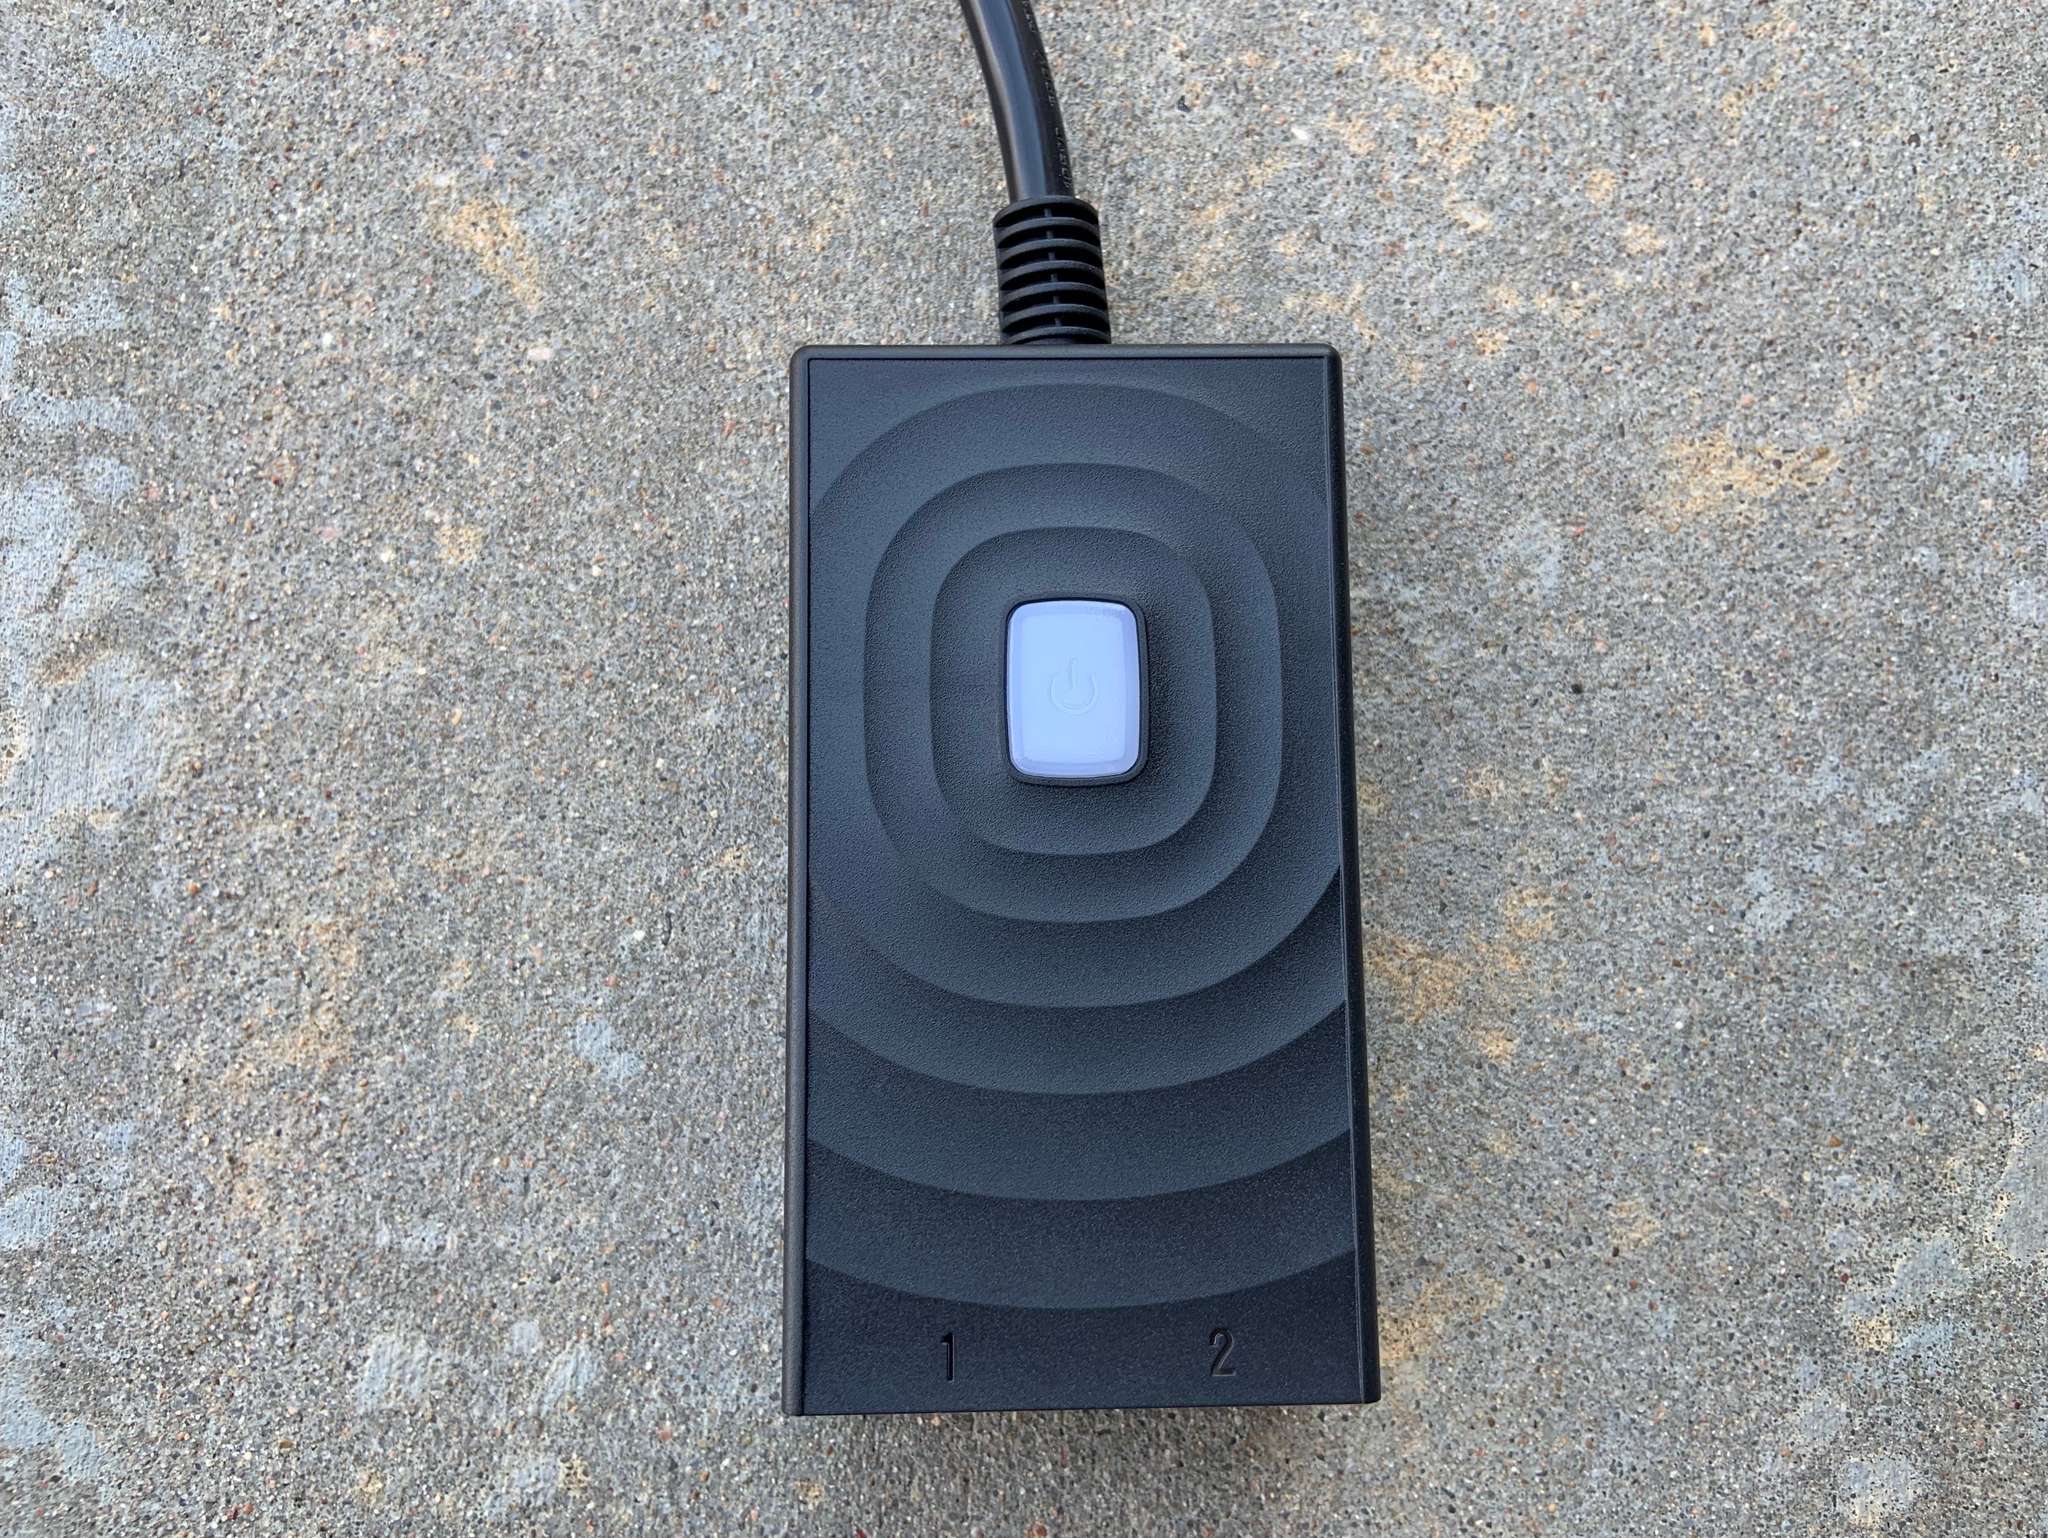 Meross Outdoor Smart Wifi Plug Front